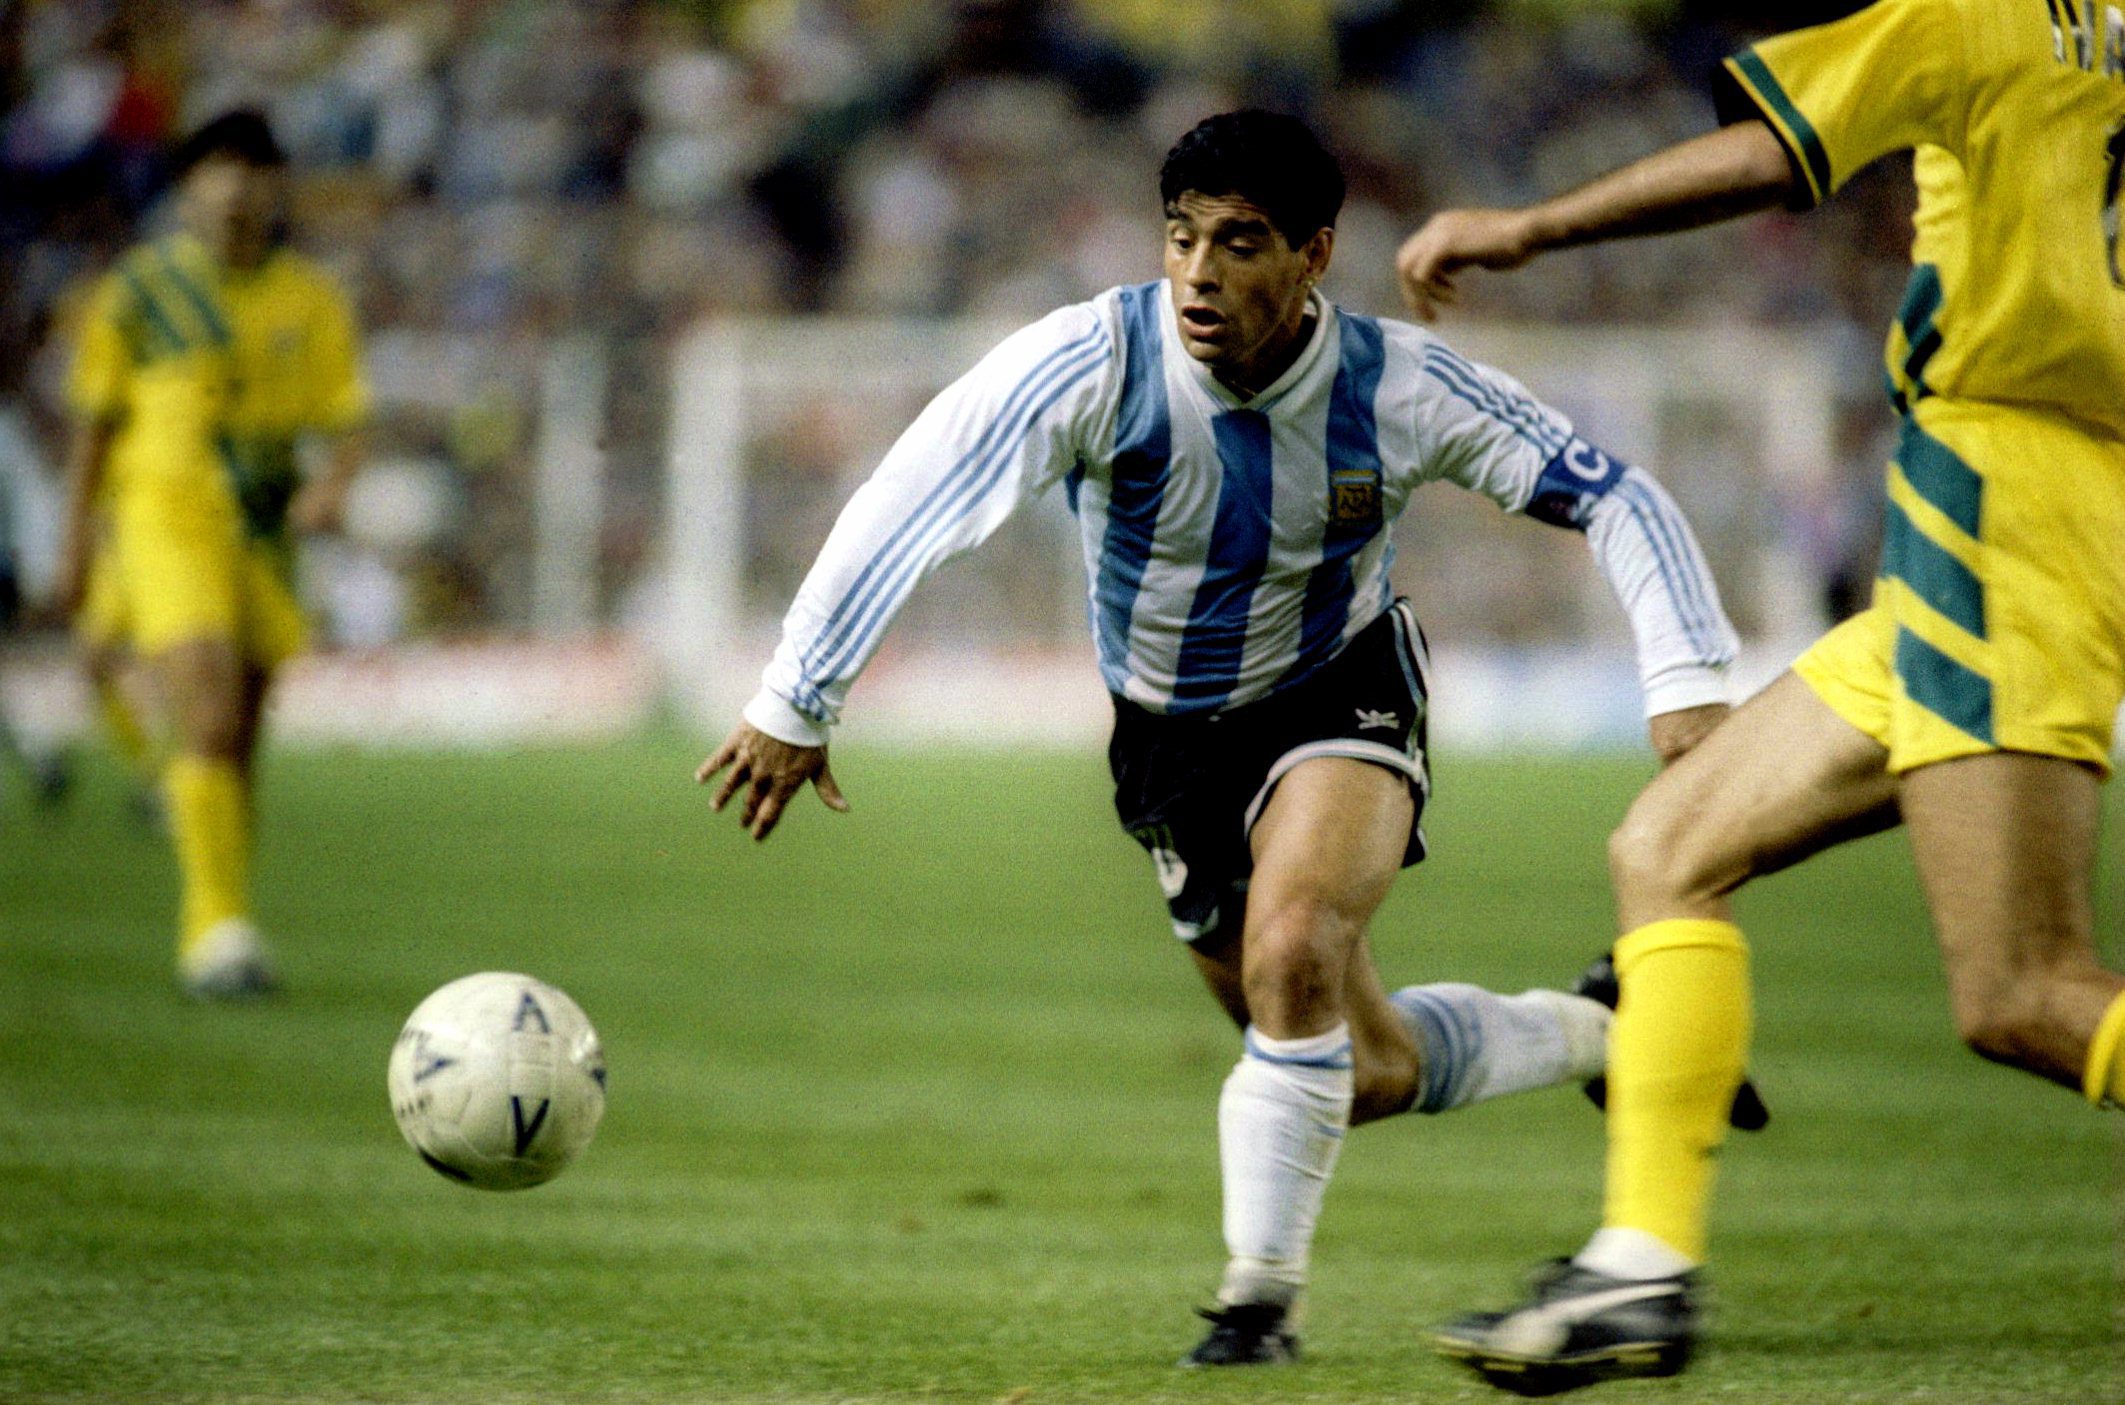 Diego Maradona v Socceroos